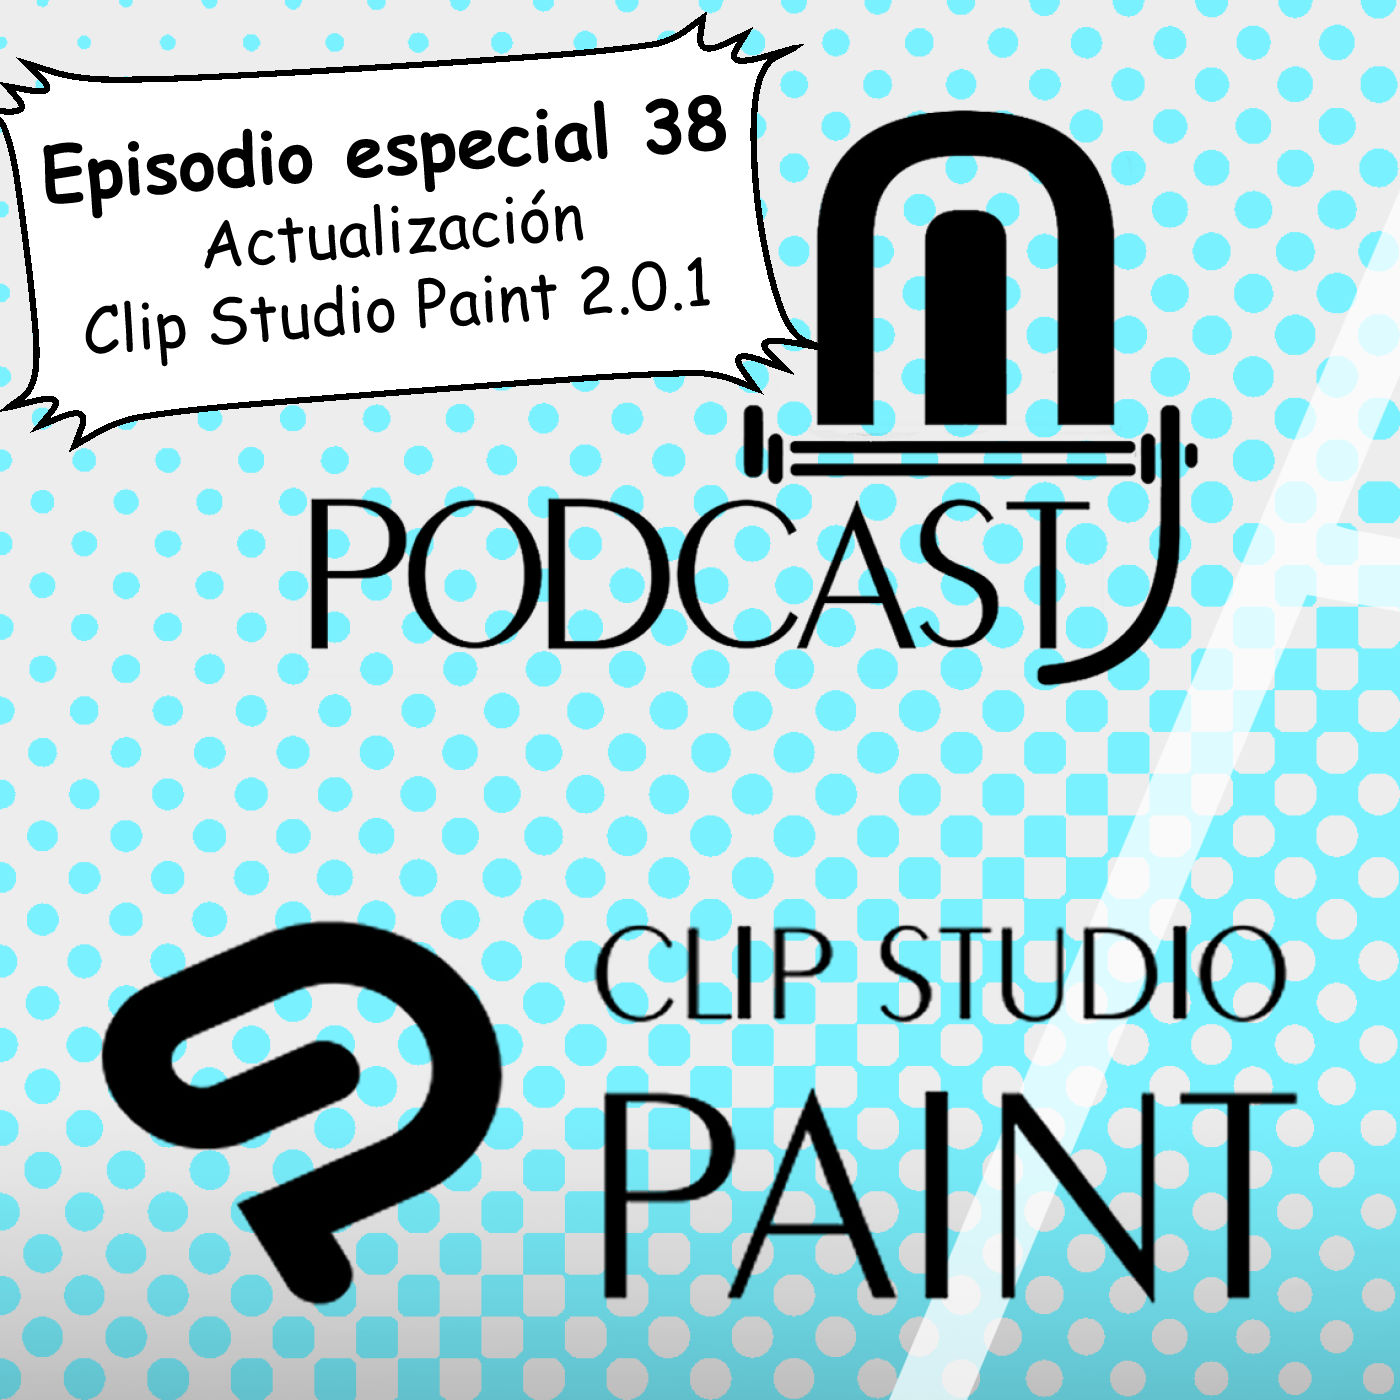 CSP especial 38. Actualización de Clip Studio Paint 2.0.1